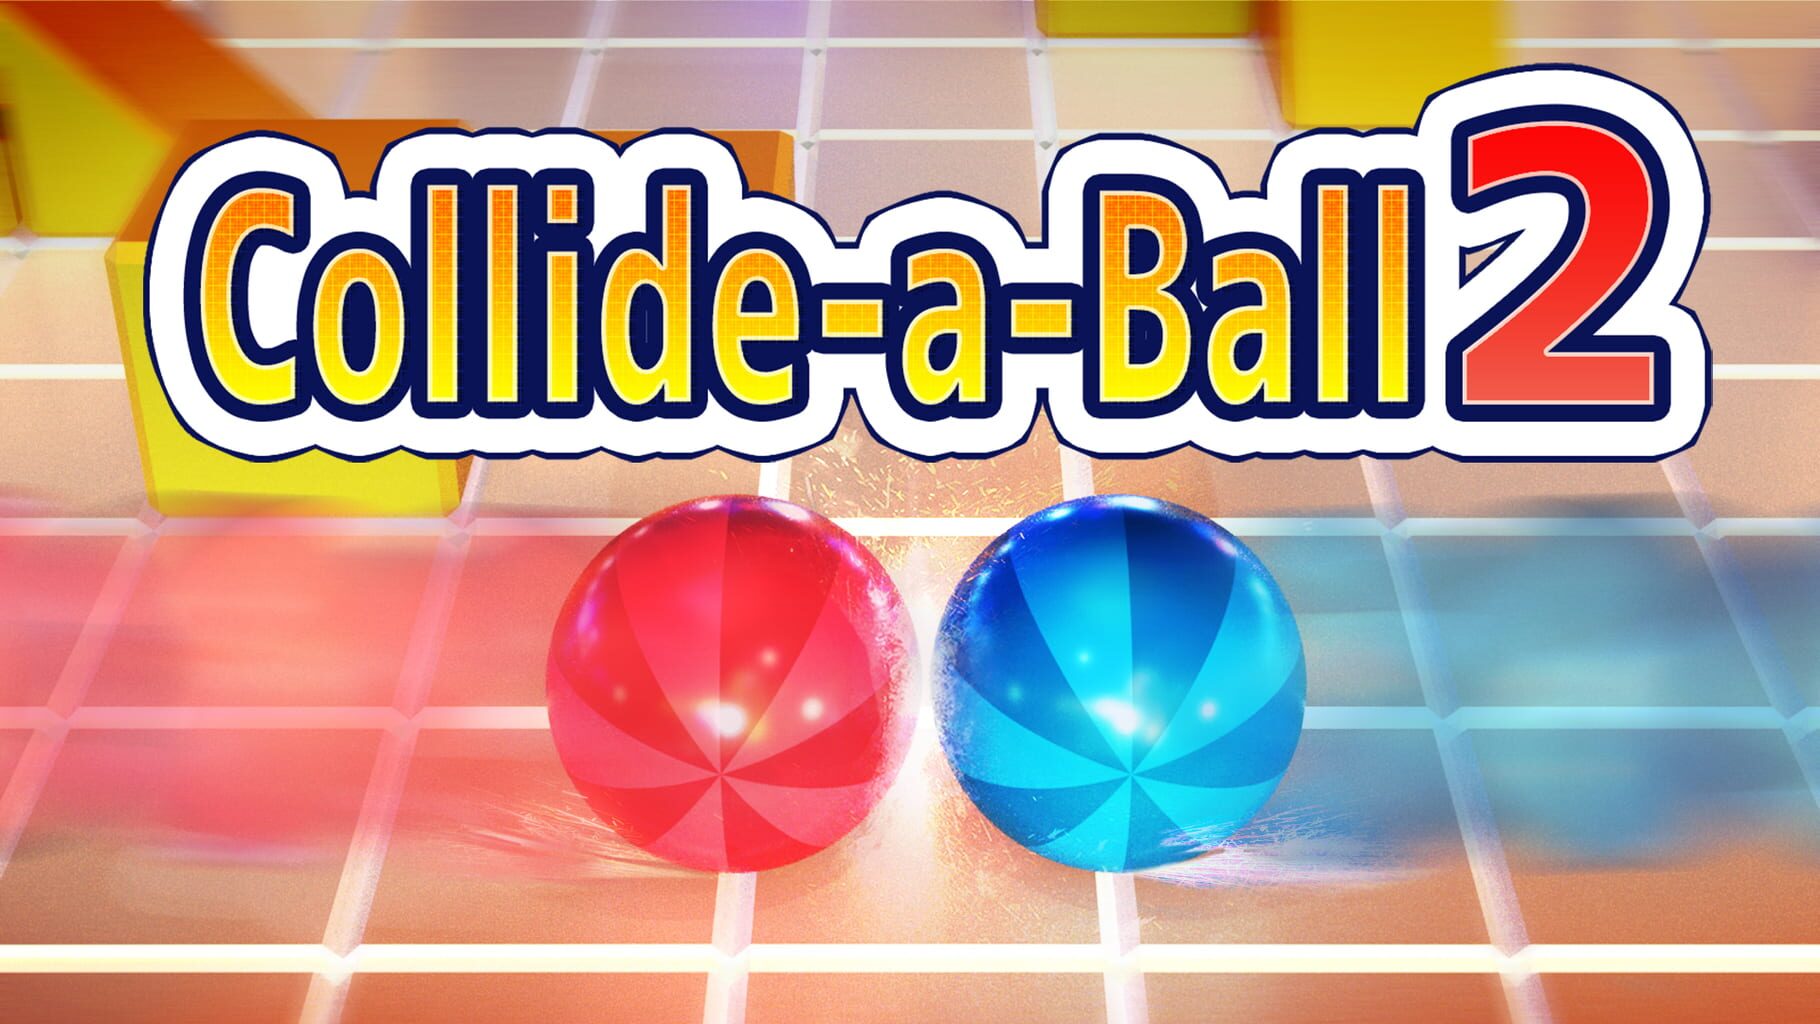 Collide-a-Ball 2 artwork